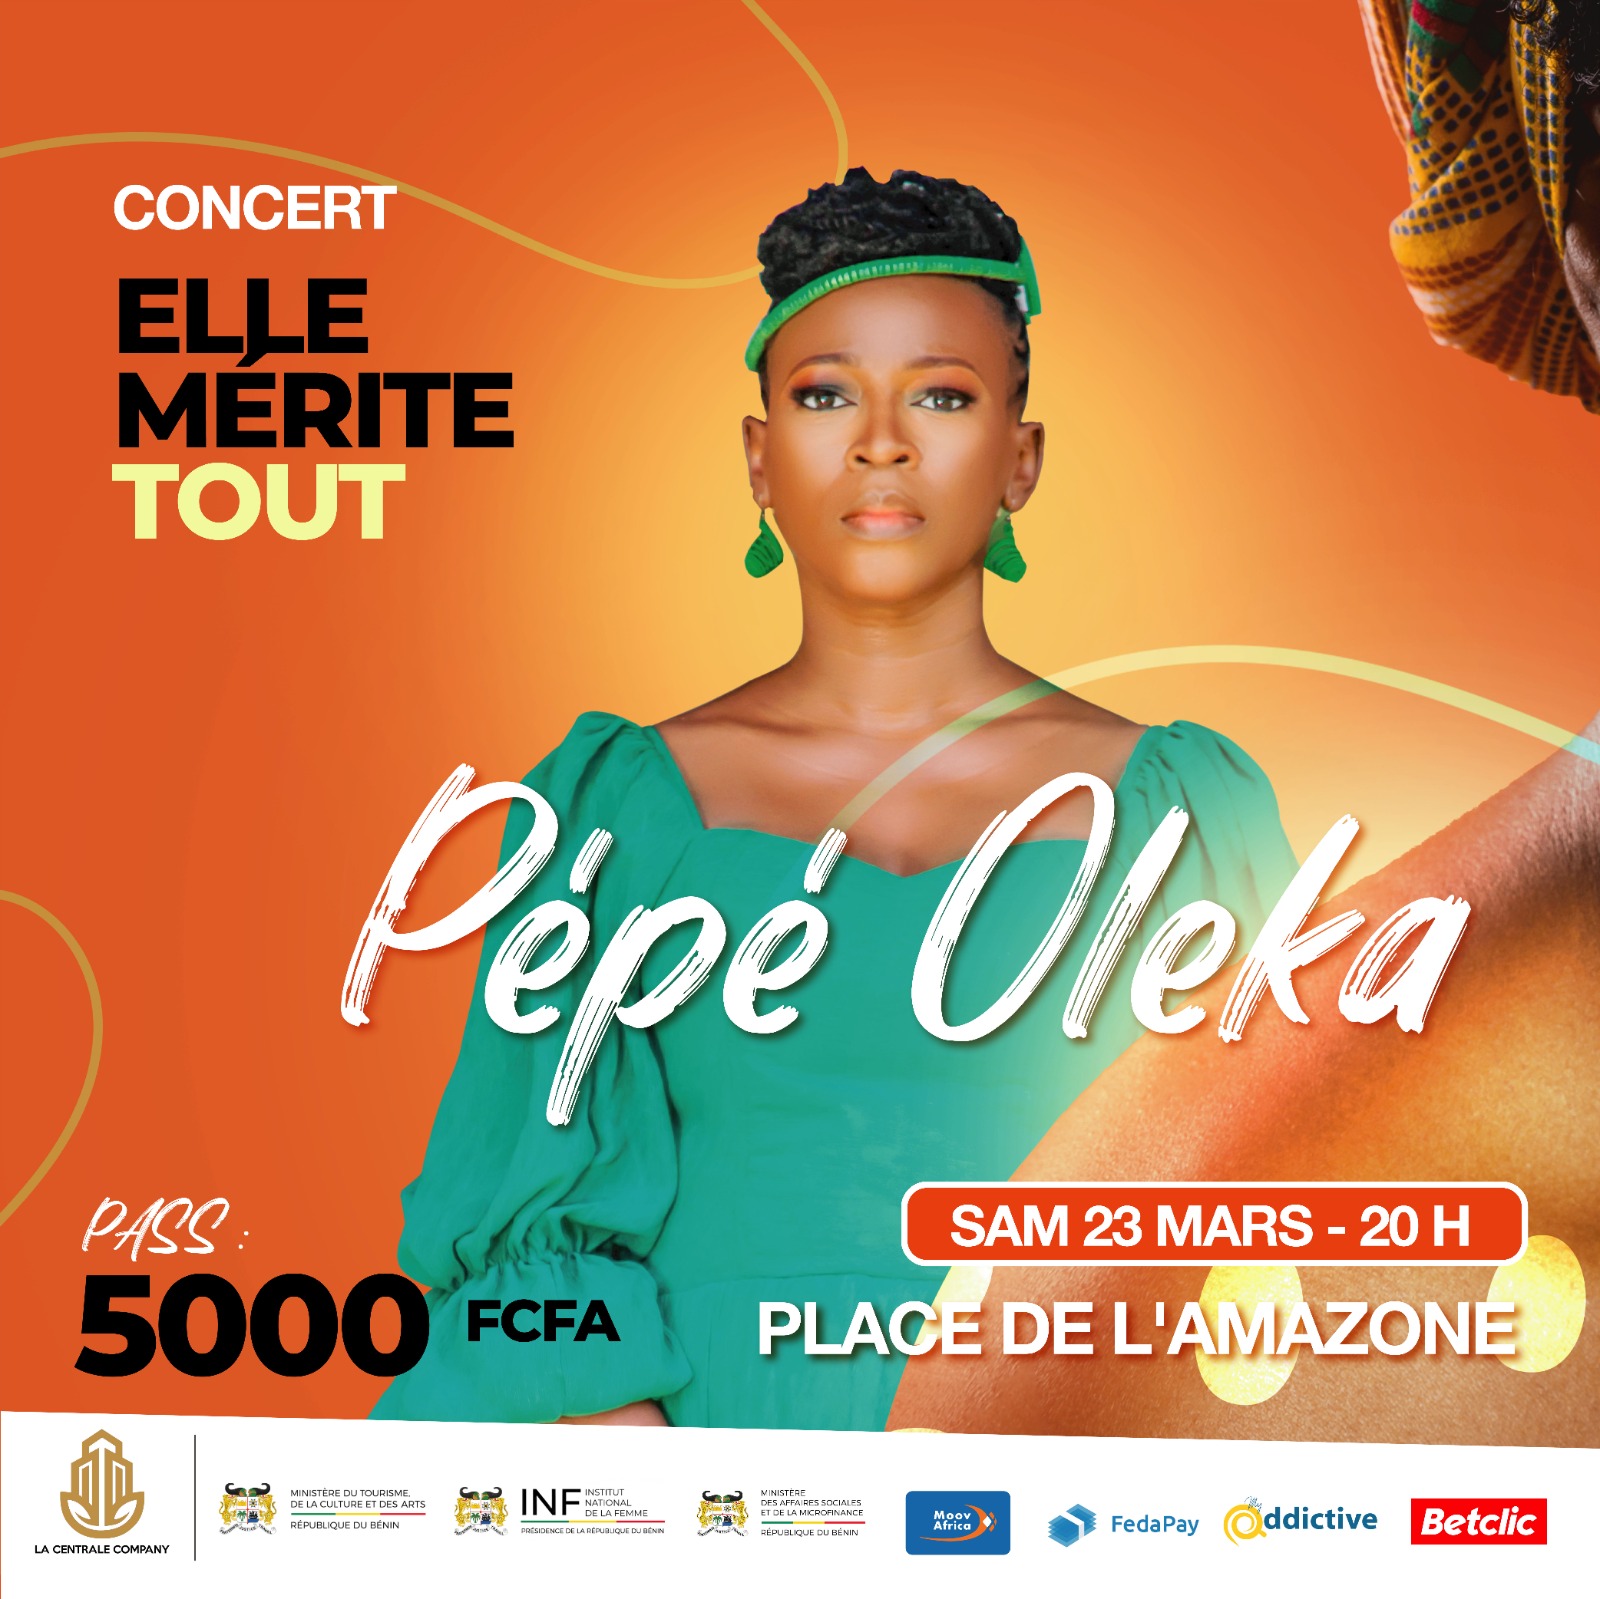 Géant concert "Elle mérite tout" : Pépé Oléka promet d'emporter le public avec sa voix mélancolique ce samedi 23 mars